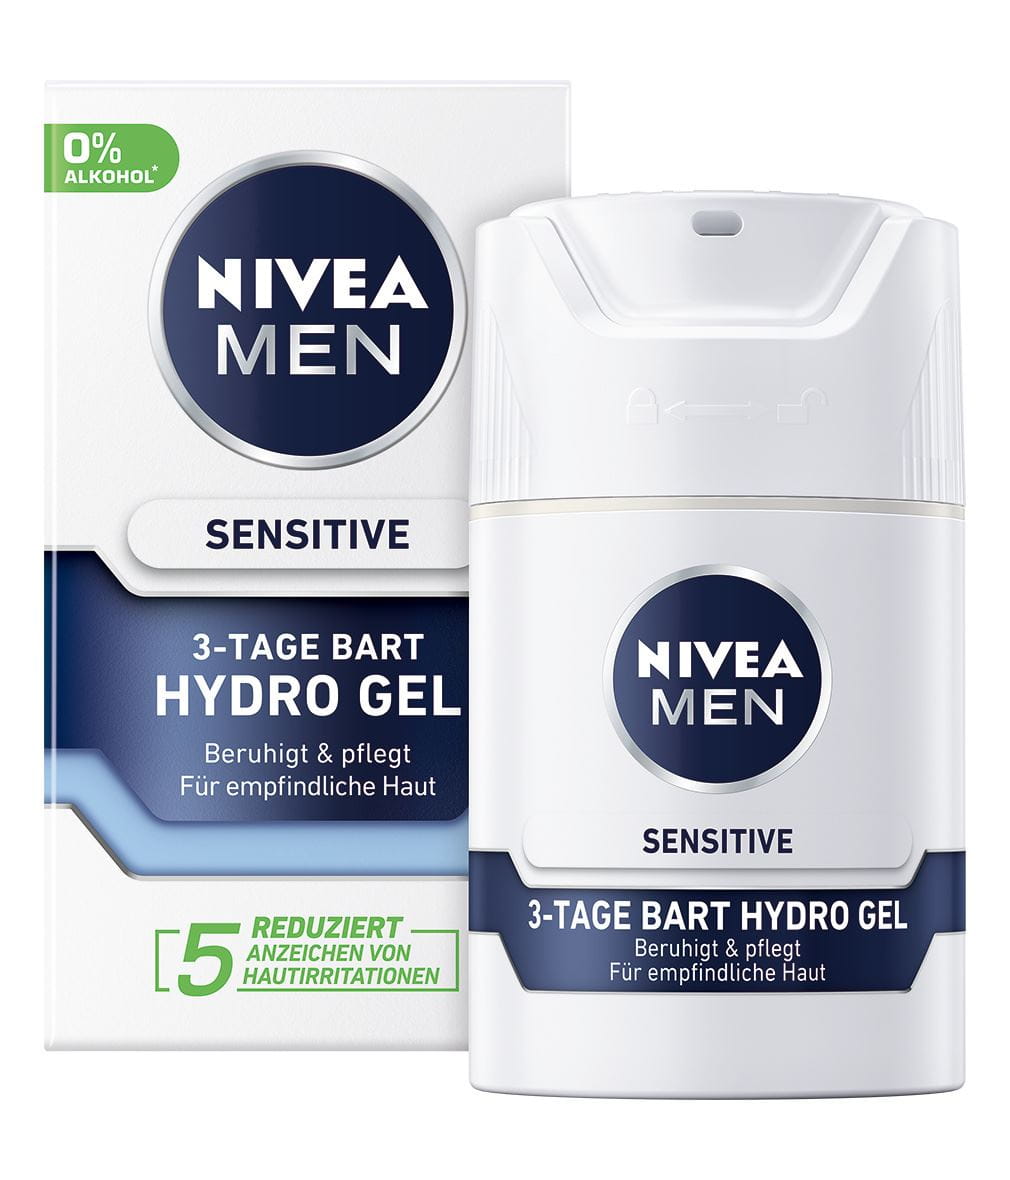 MEN Senstive 3-Tage Bart Hydro Gel_50ml